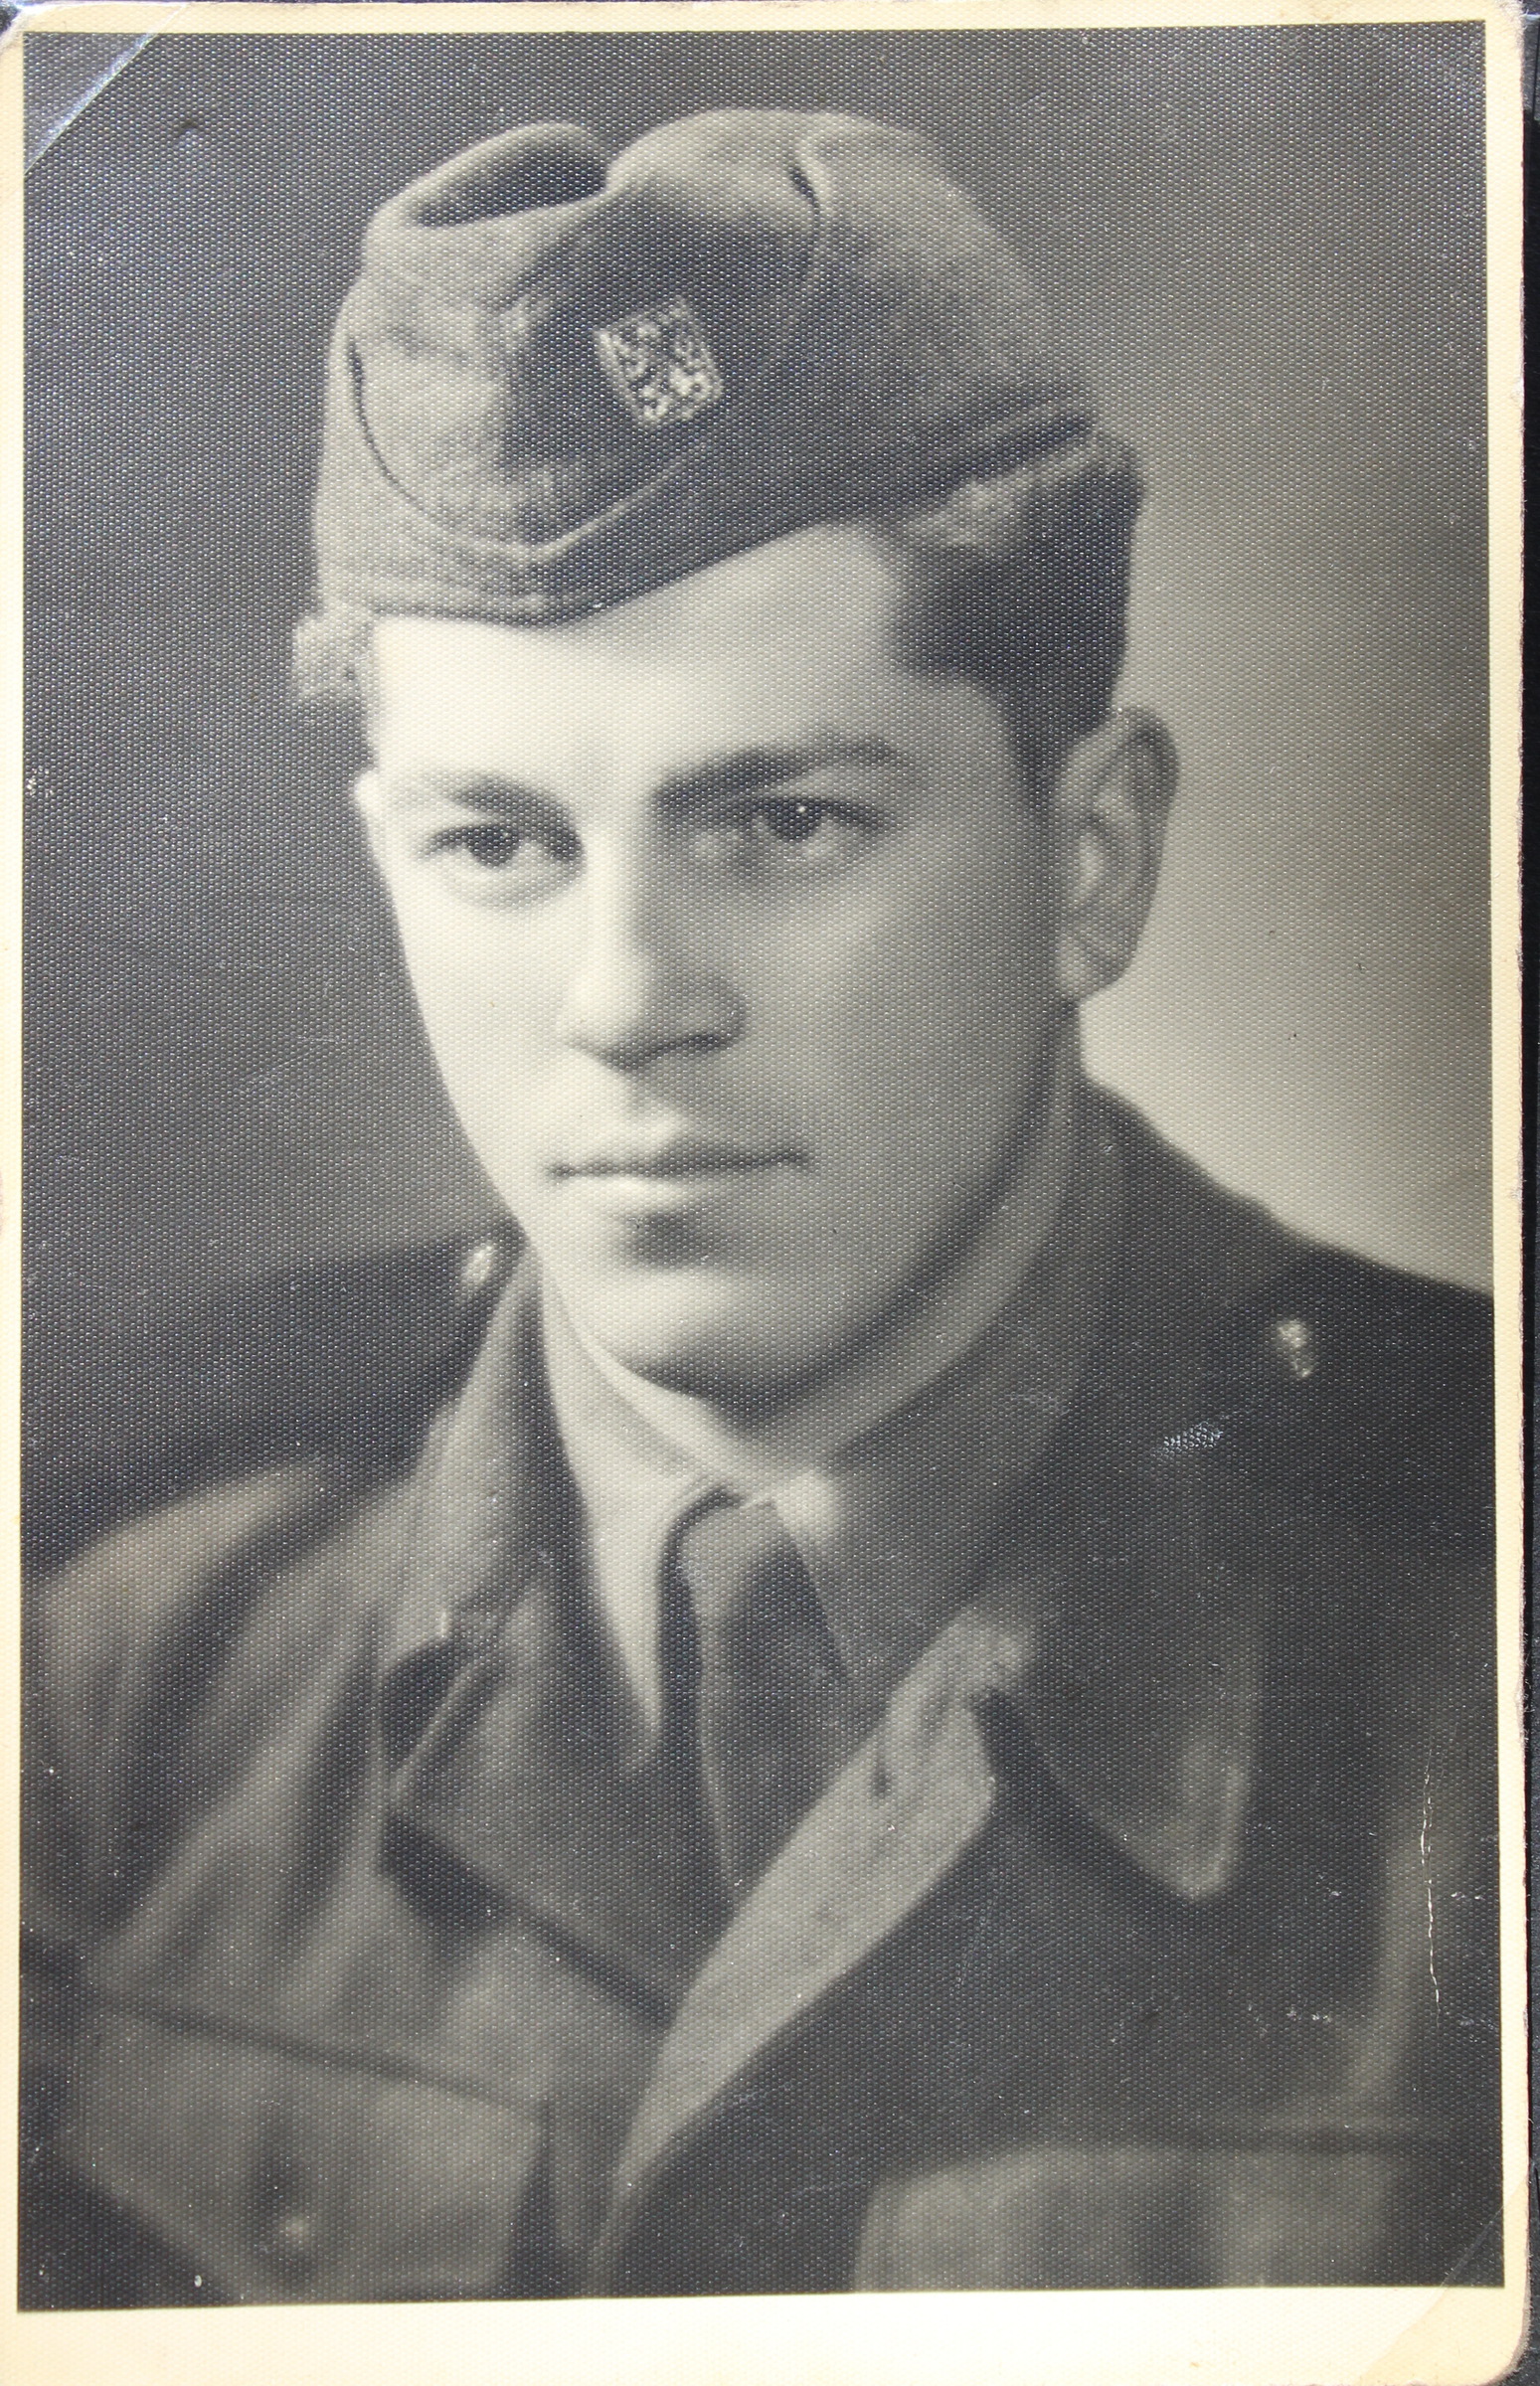 Karel Vošalík during military service